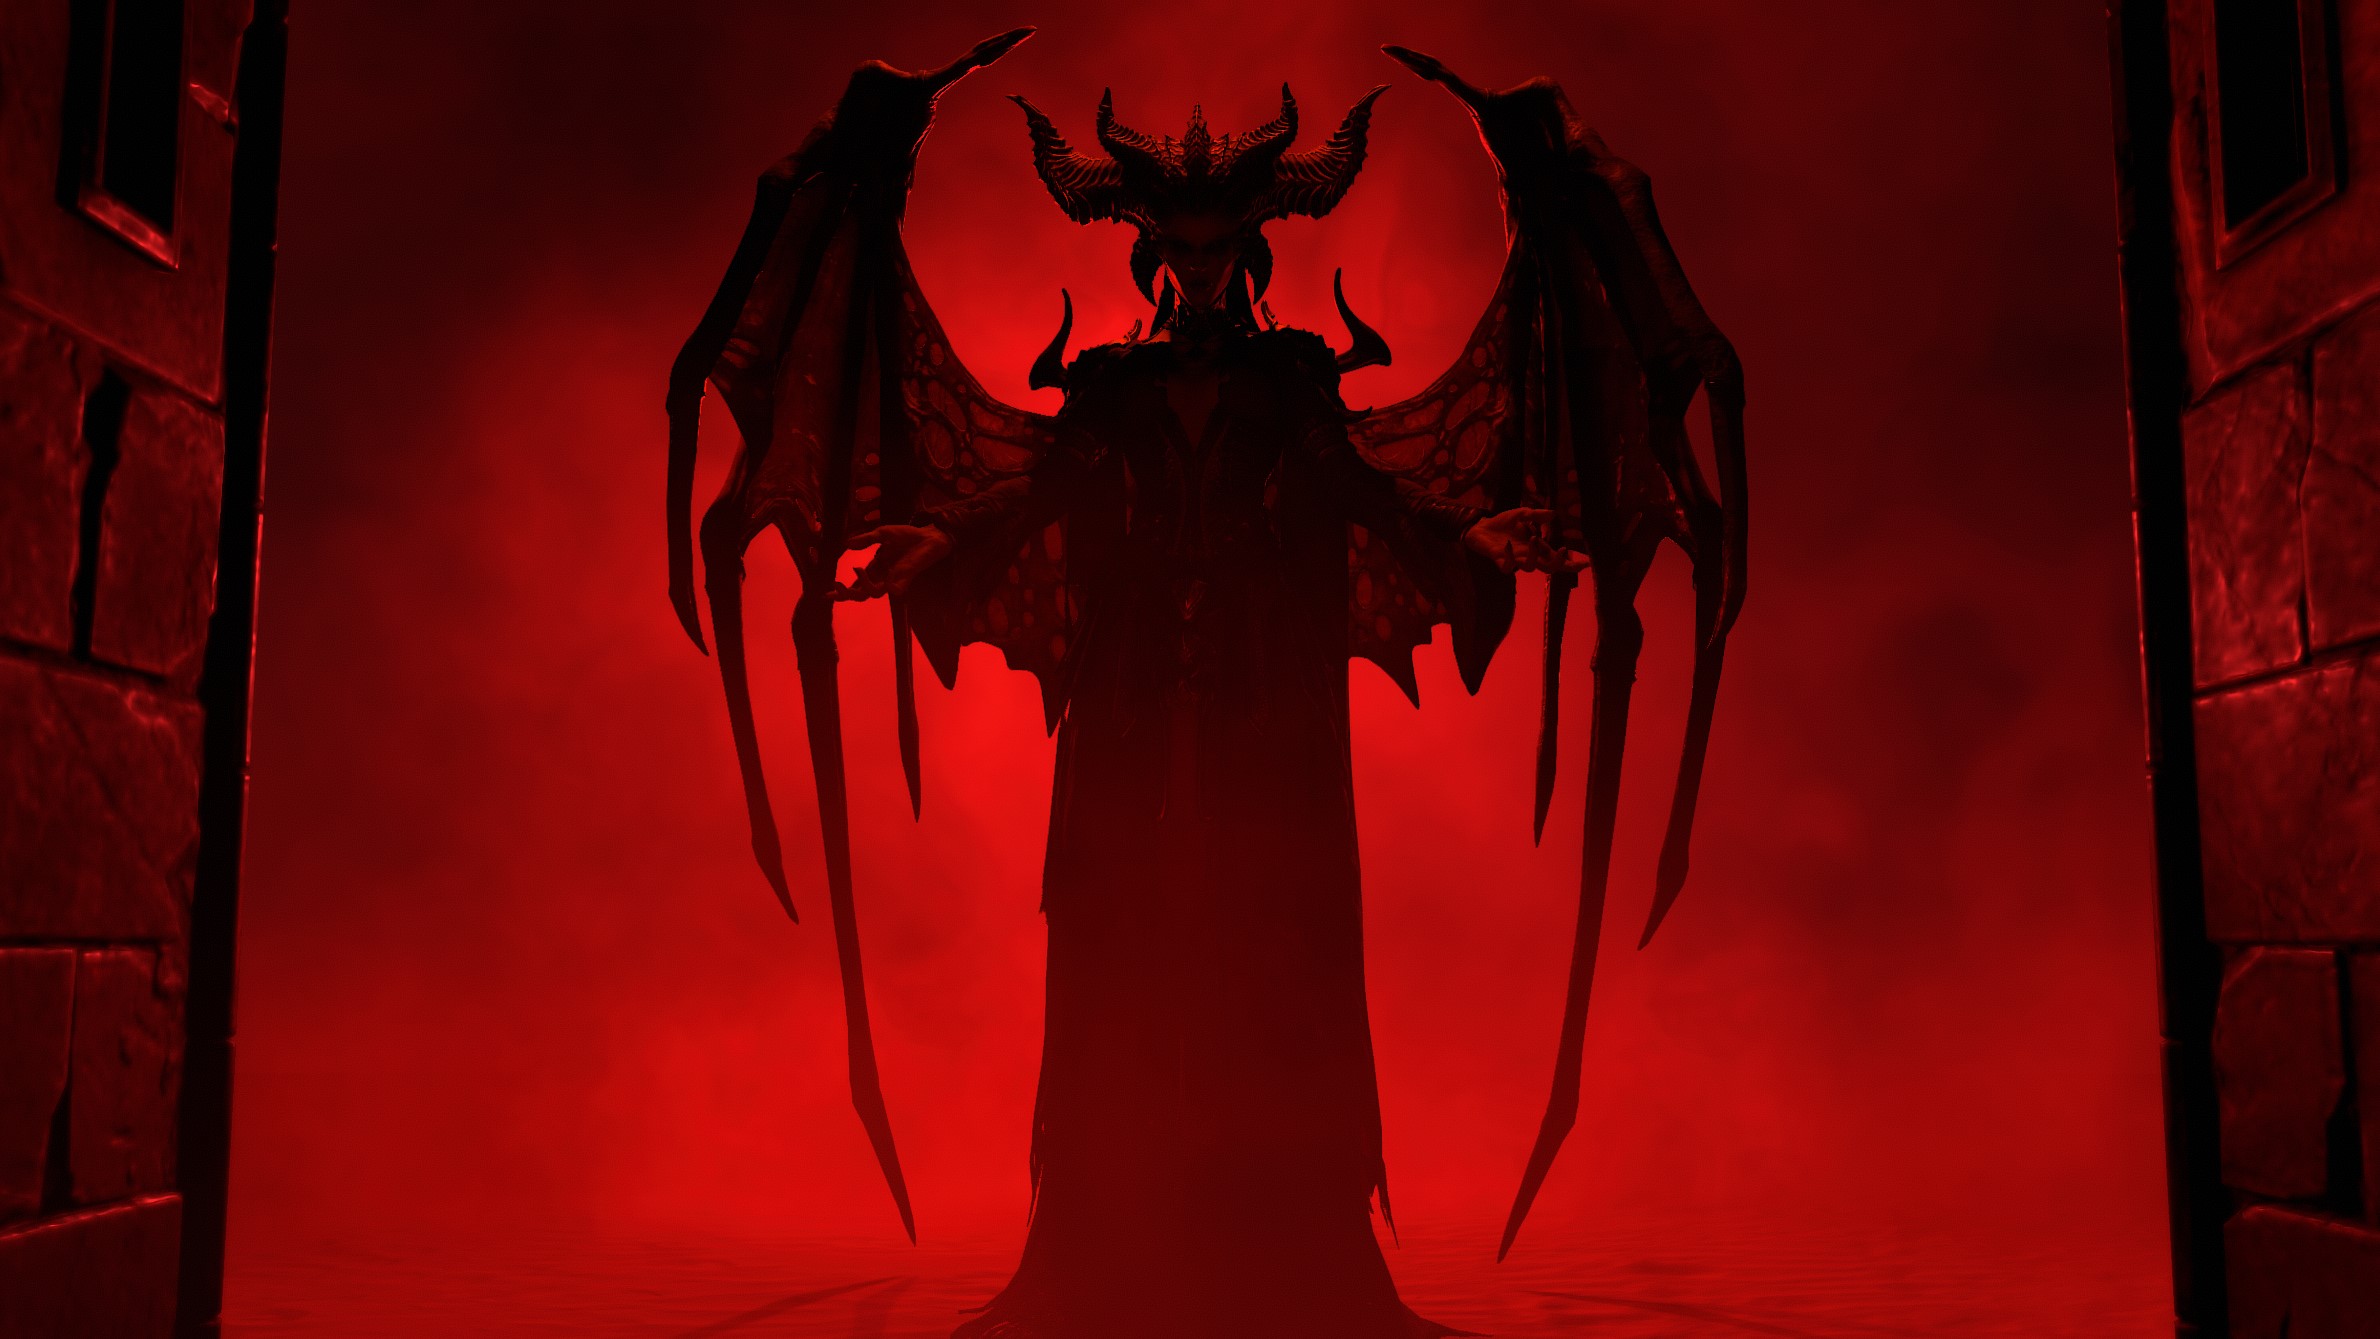 Oyuncular, Diablo 4'ün zamanlanmış olaylarının temelini oluşturan korkunç detayları çözdüklerini iddia ediyorlar.